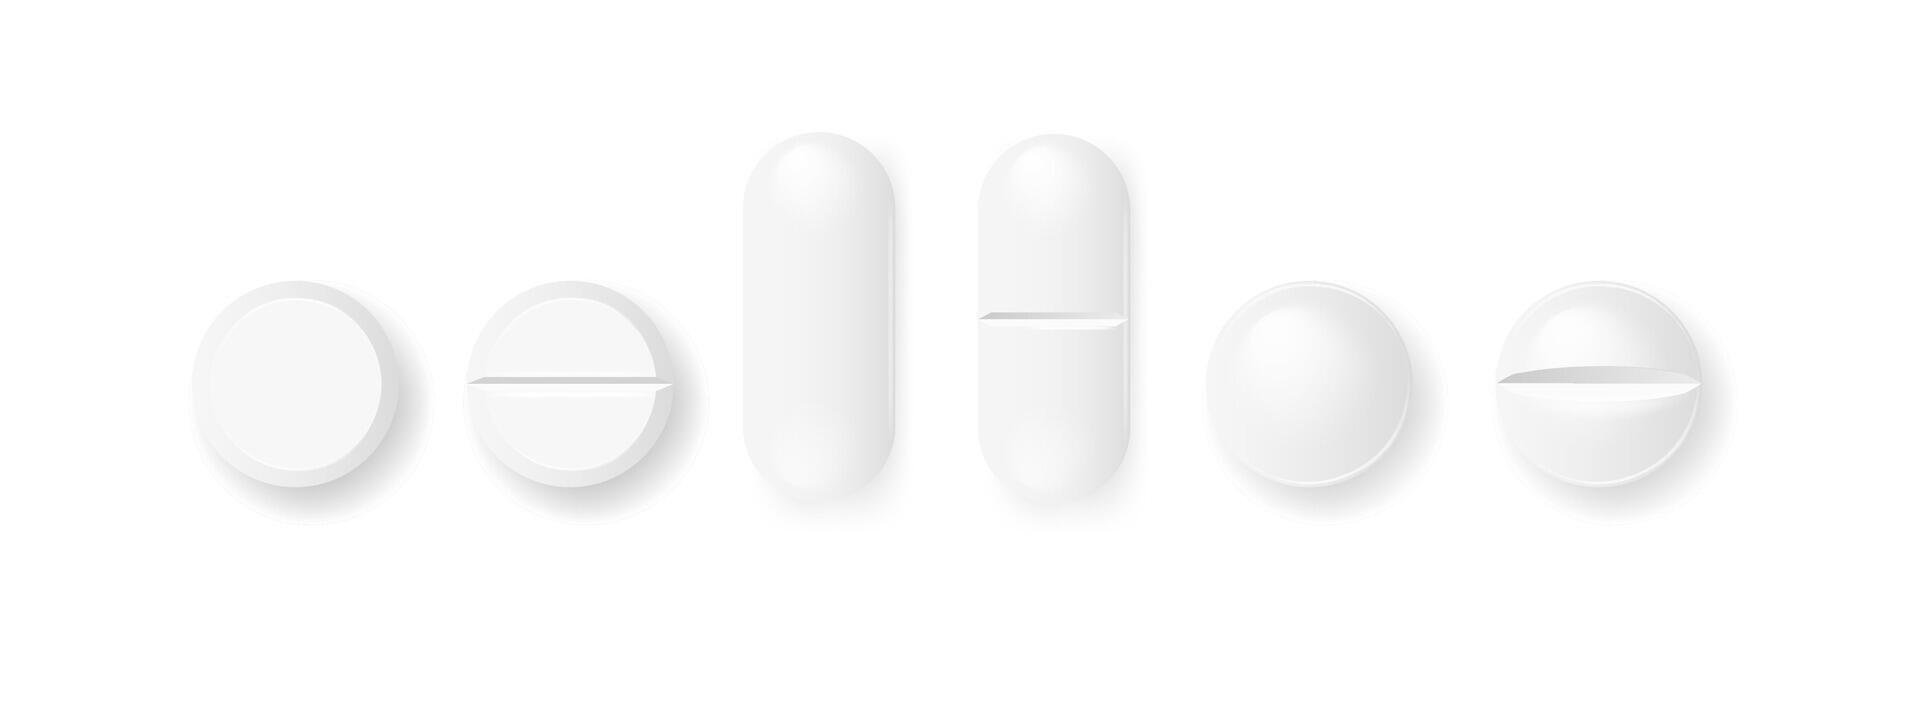 piller och kapslar mediciner tabletter vektor